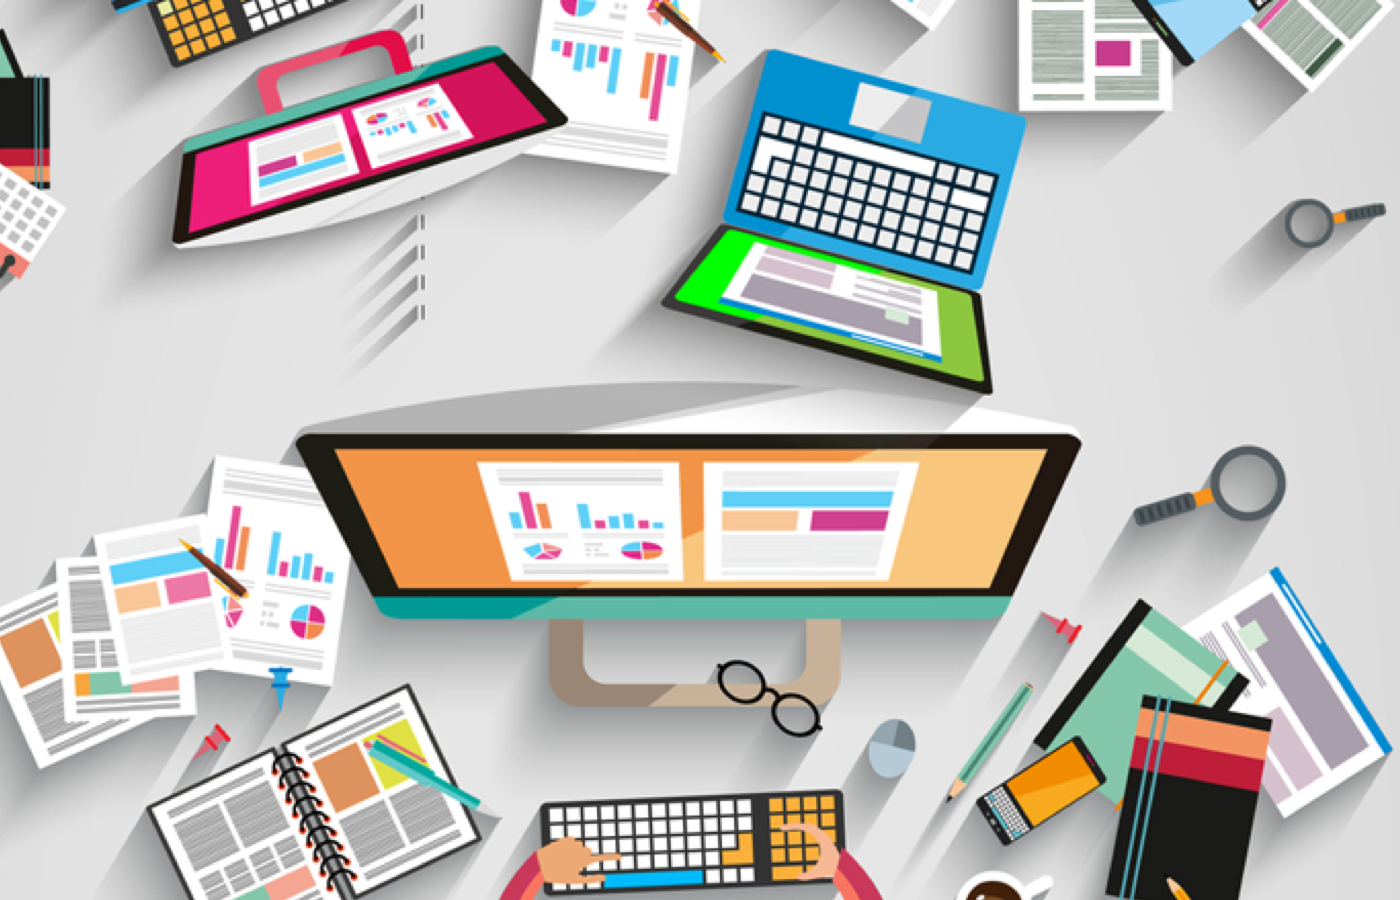 Ilustration eines digitalen Arbeitsplatzes. Mehrere gezeichnete Desktops und Laptops in einer Draufsicht von oben auf einen Schreibtisch.